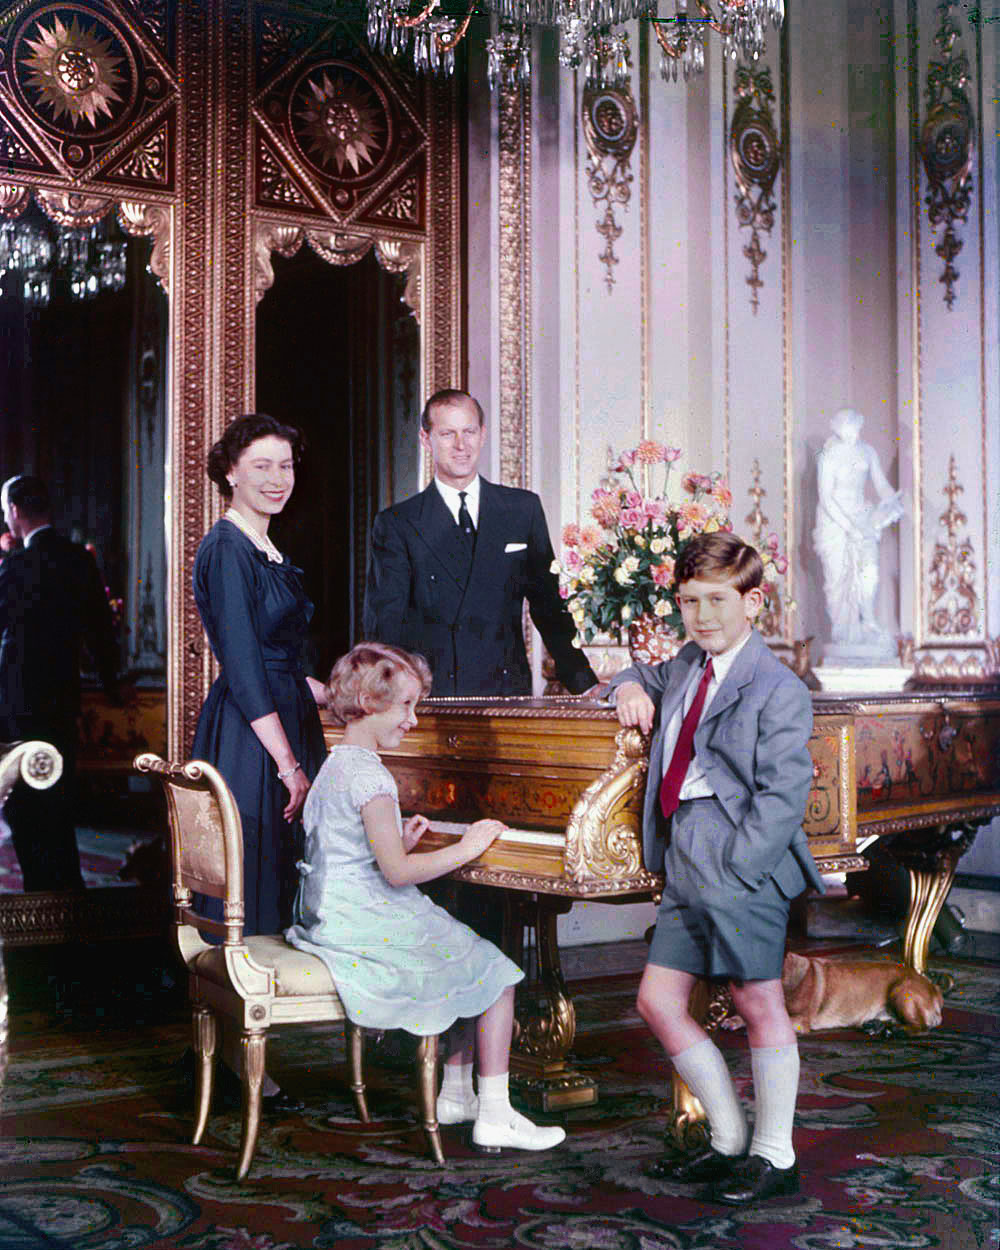 Принц Чарльз с принцессой Анной и родителями — Елизаветой II и Филиппом, герцогом Эдинбургским, в 1957 году